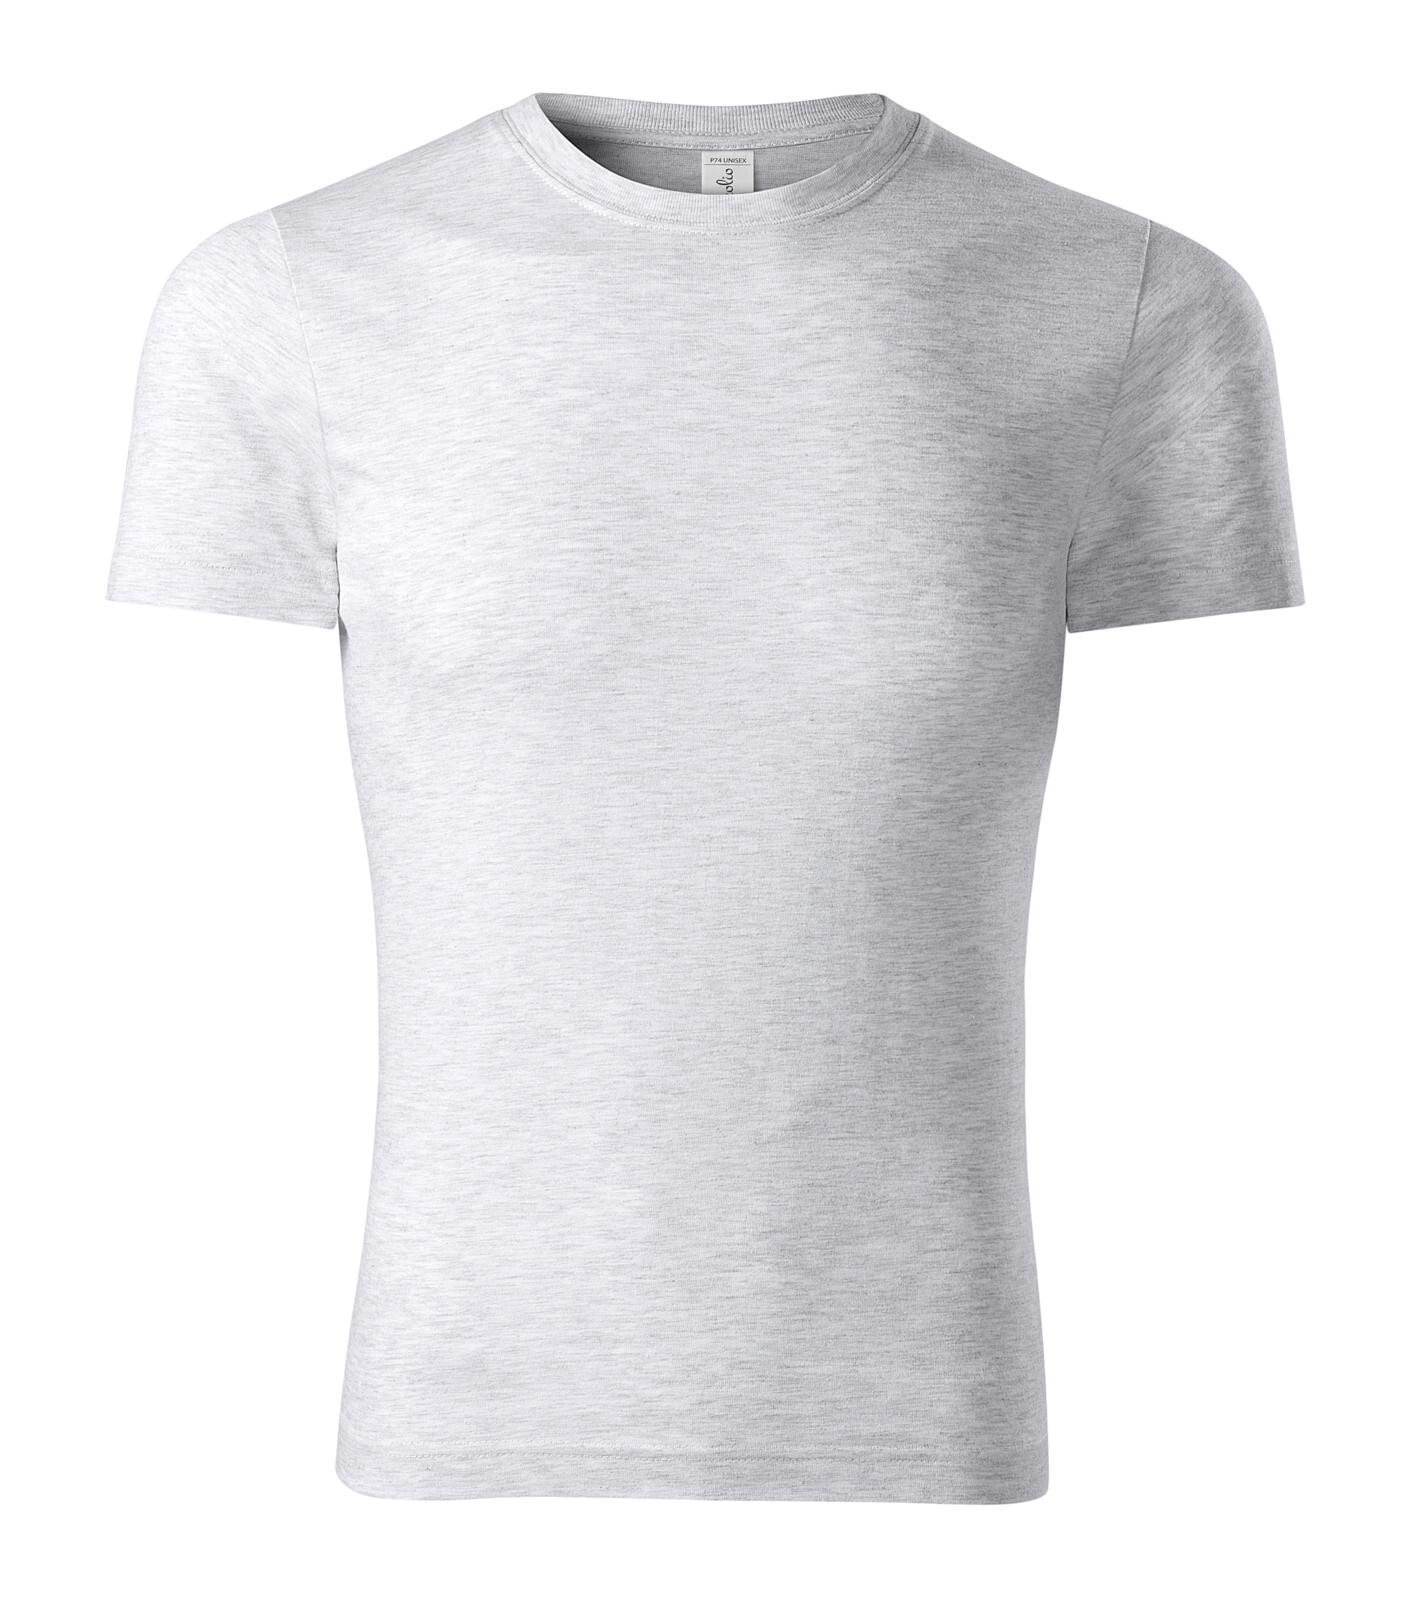 Unisex bavlnené tričko Piccolio Peak P74 - veľkosť: M, farba: svetlosivý melír